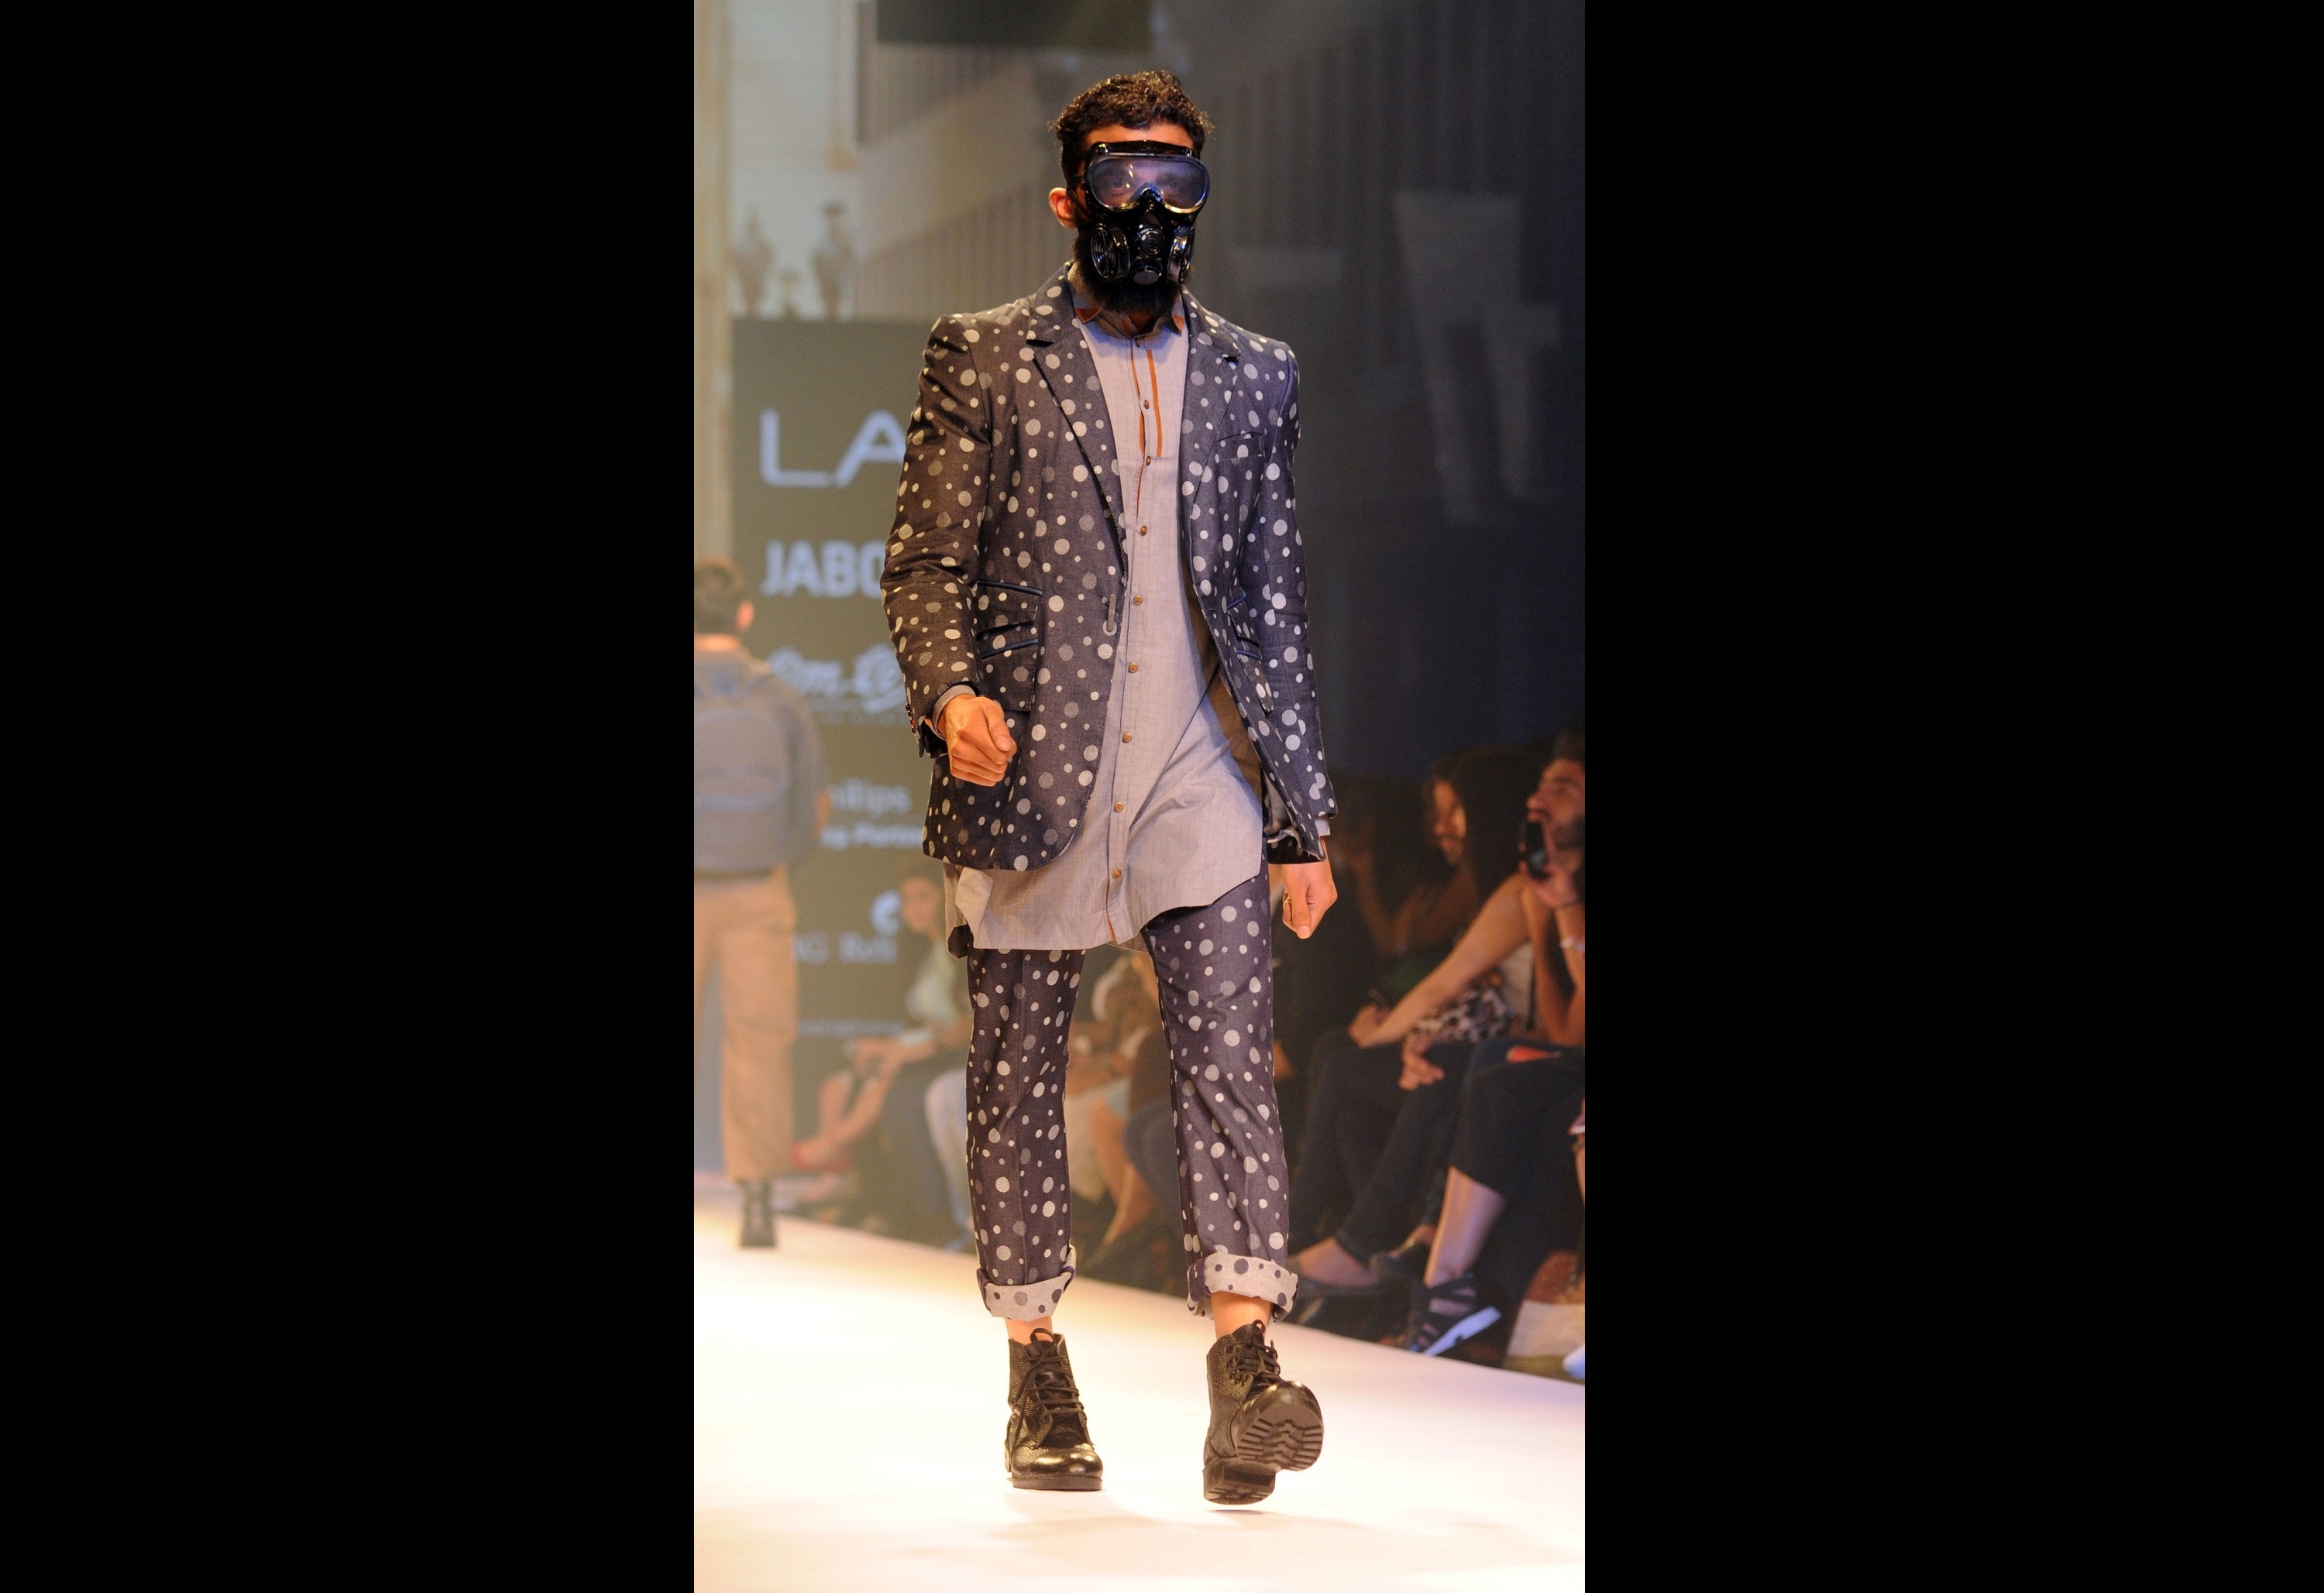 Lakme Fashion Week 2015: Designer Amalraj Sengupta